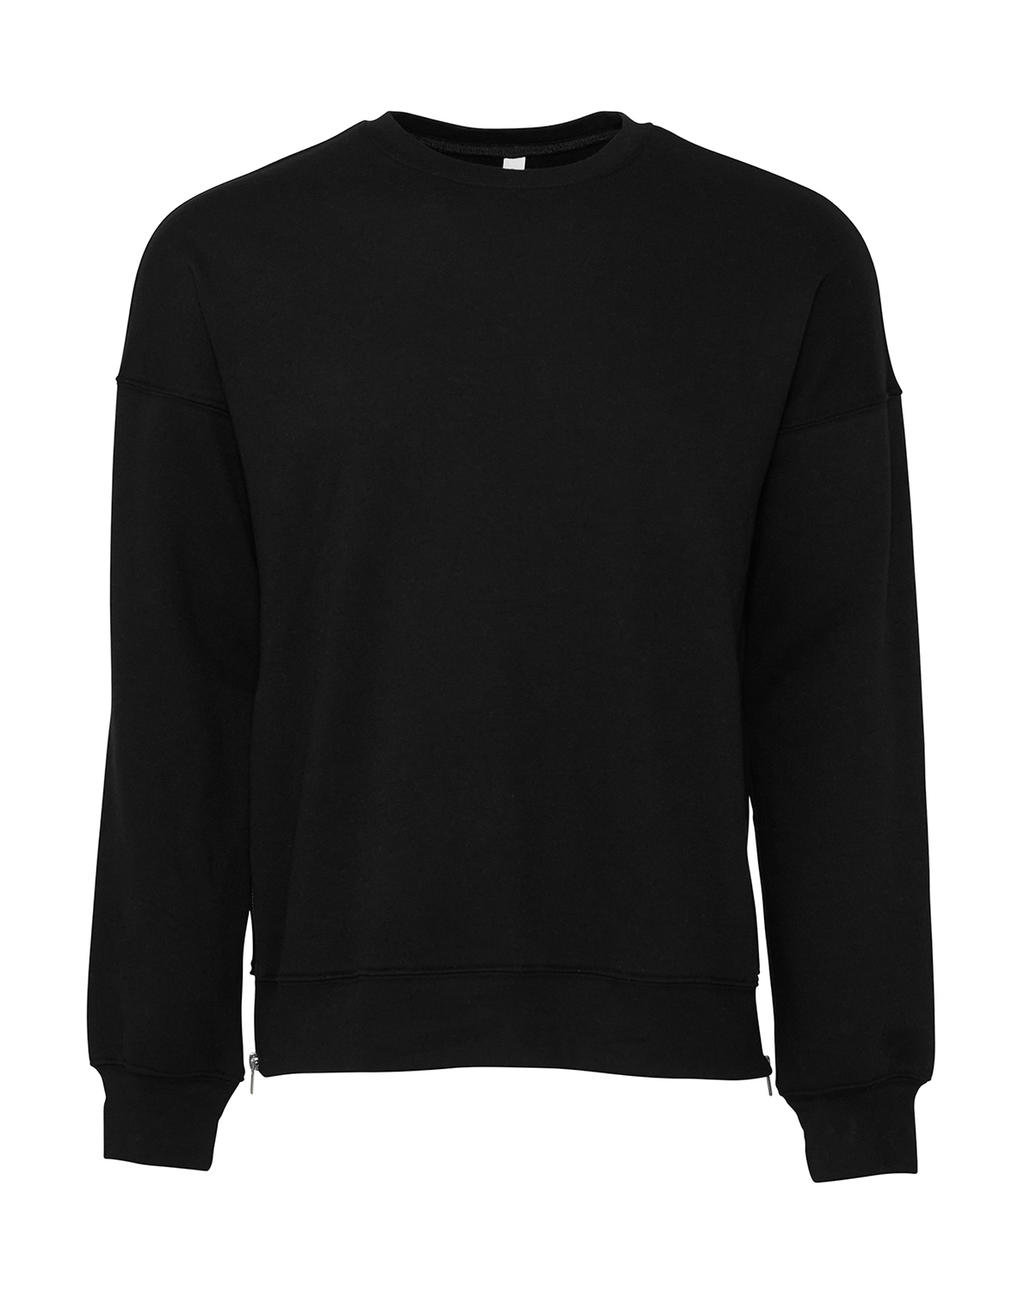  Unisex Drop Shoulder Fleece in Farbe DTG Black